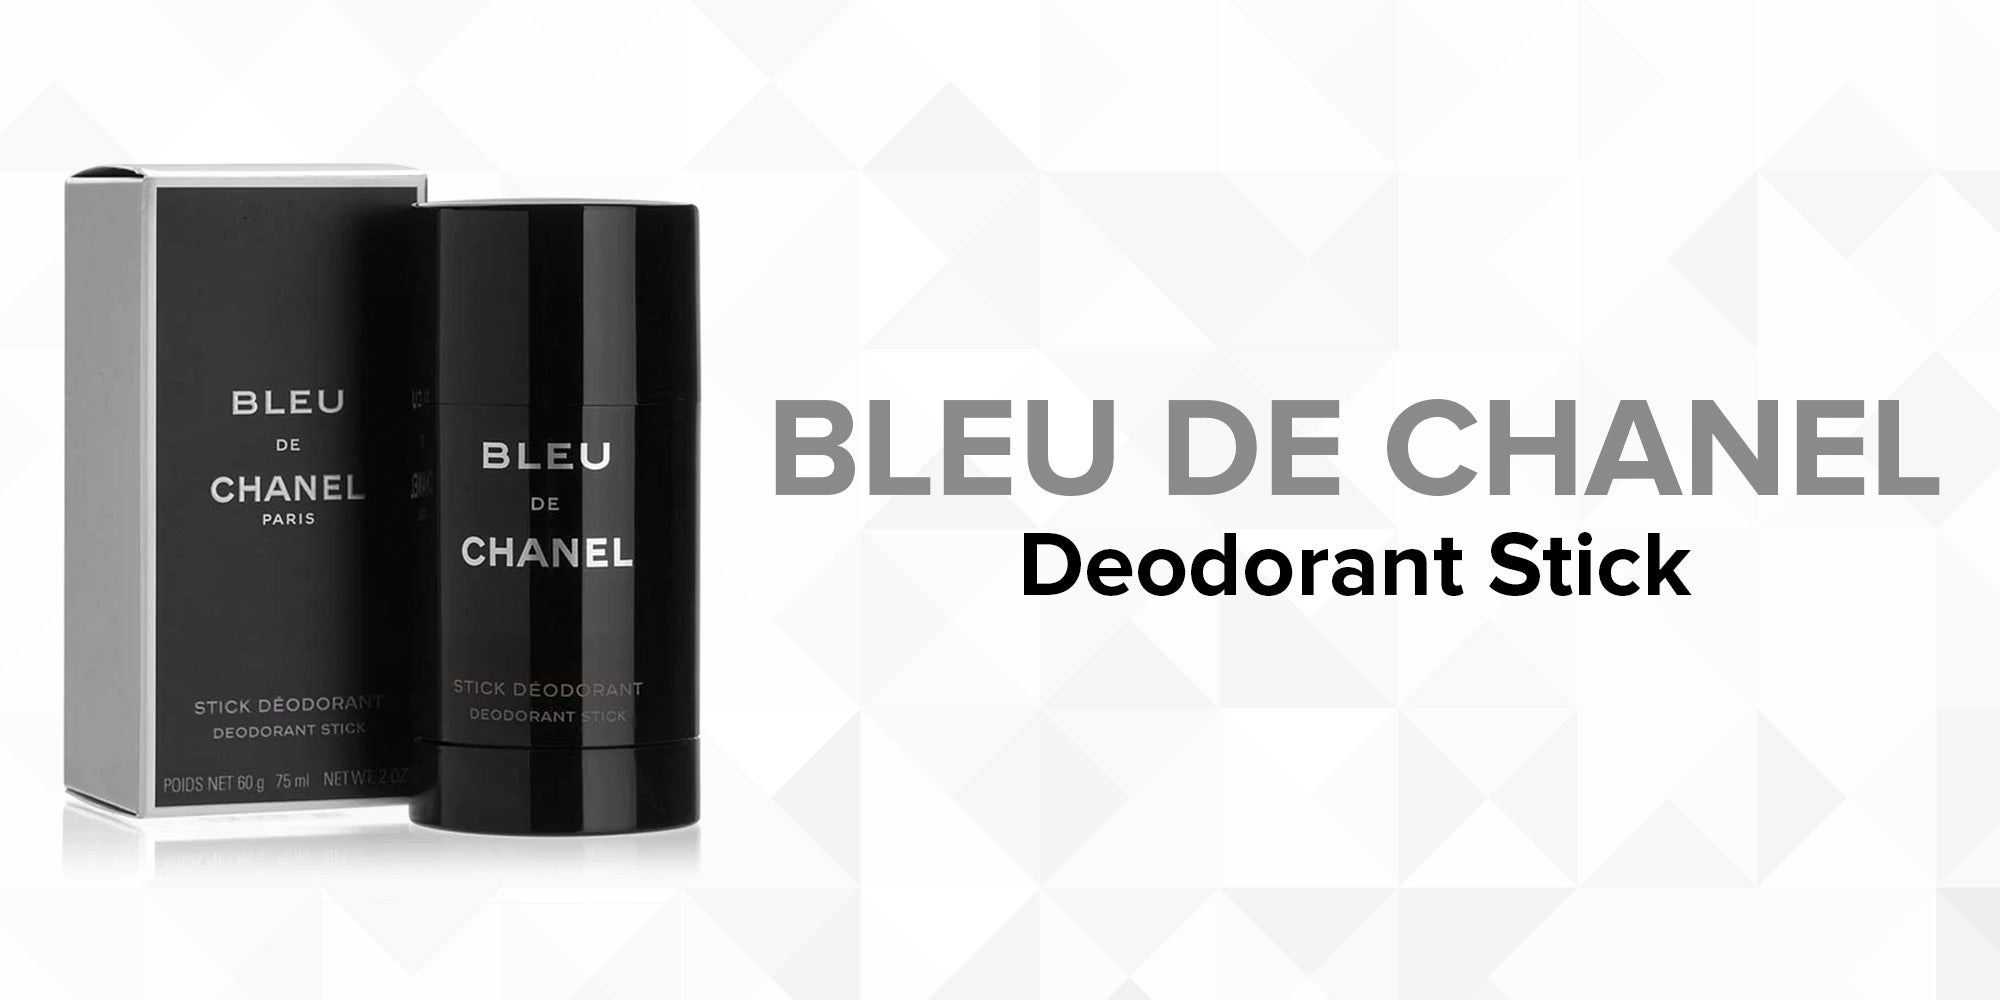 chanel bleu de deodorant